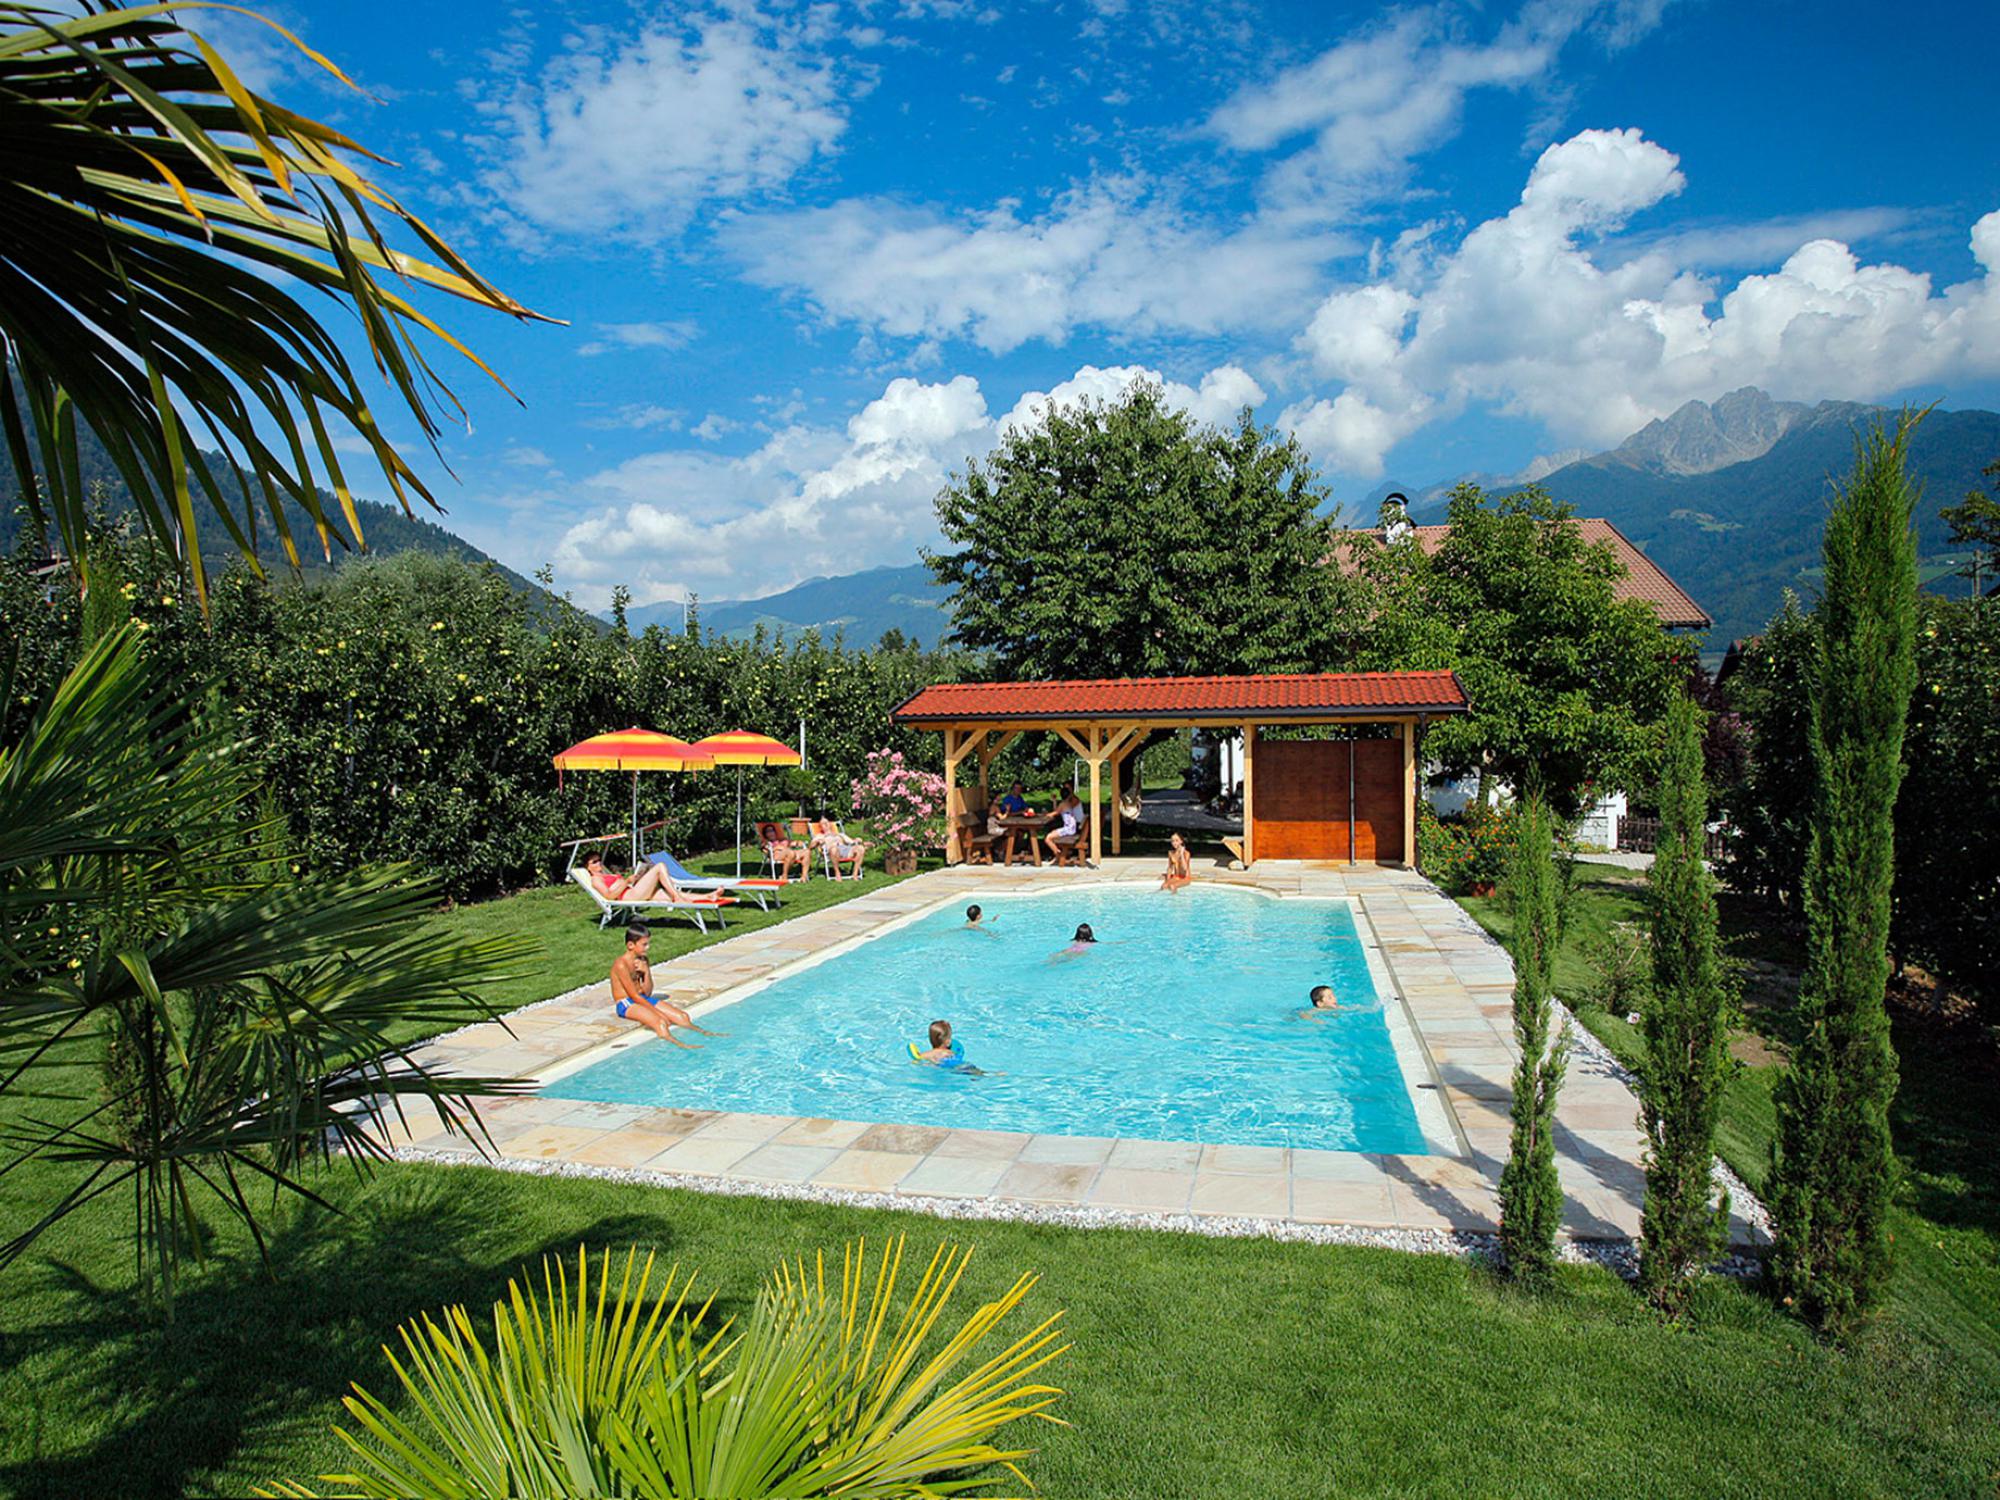 La Piscina / Pool del Rimmelehof a Tirolo